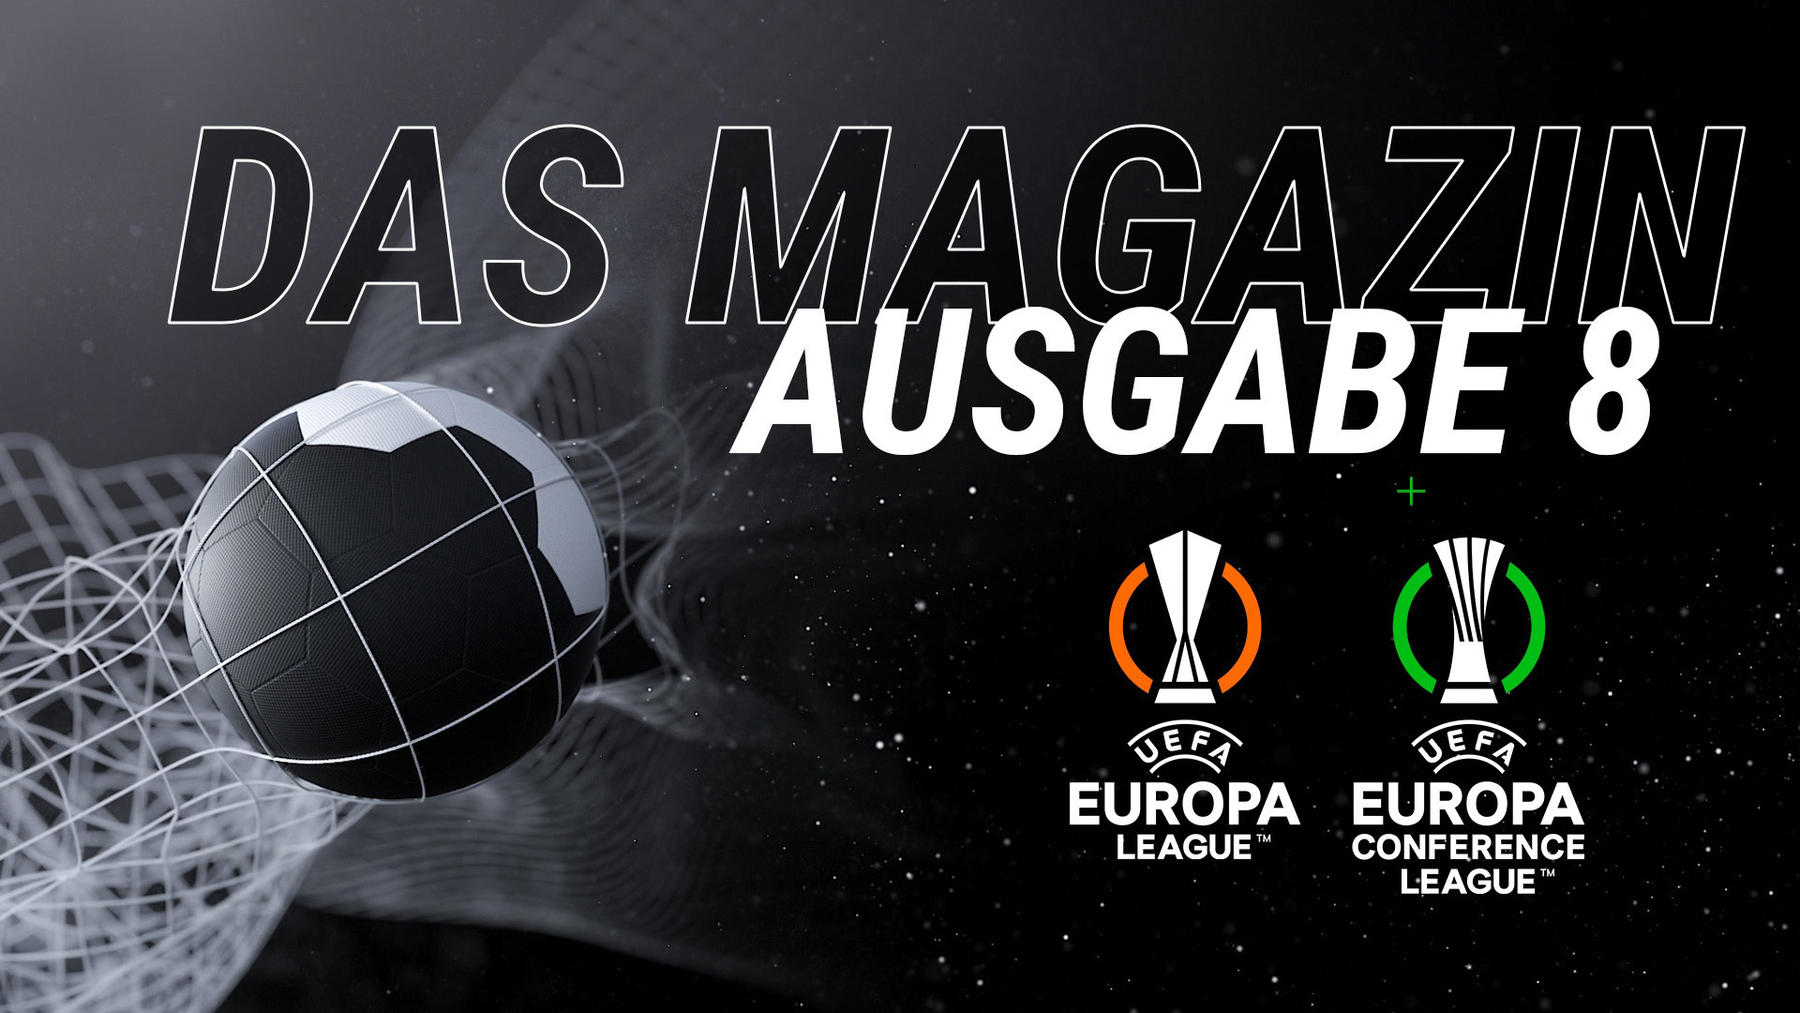 Das Magazin: UEFA Europa League / UEFA Europa Conference League